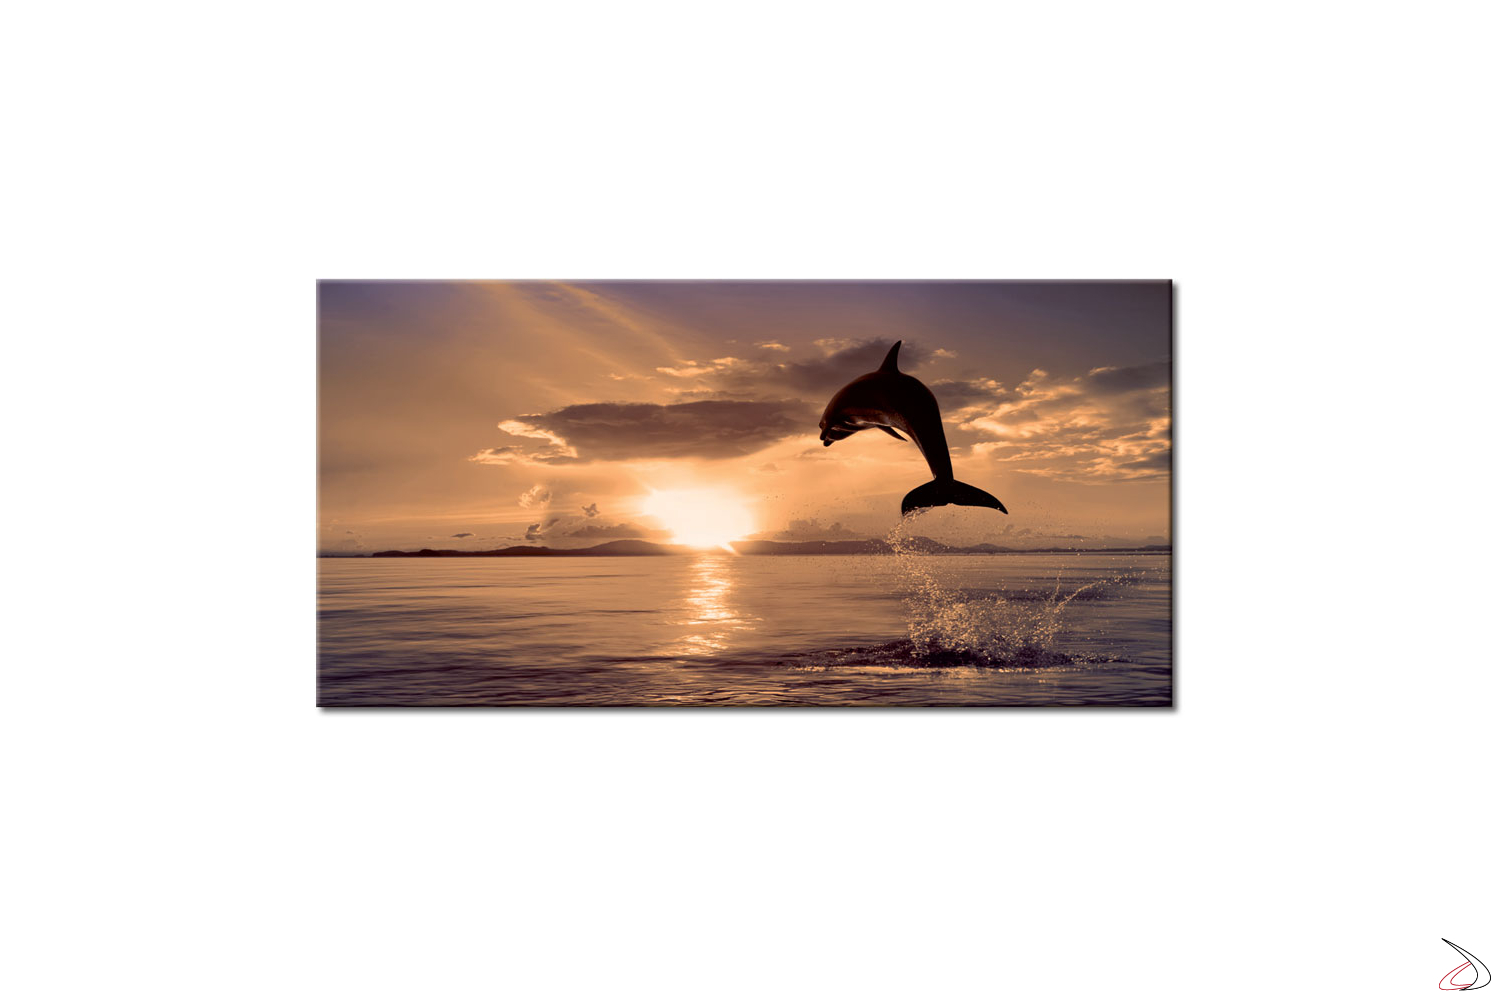 Quadro con immagine digitale, delfini al tramonto